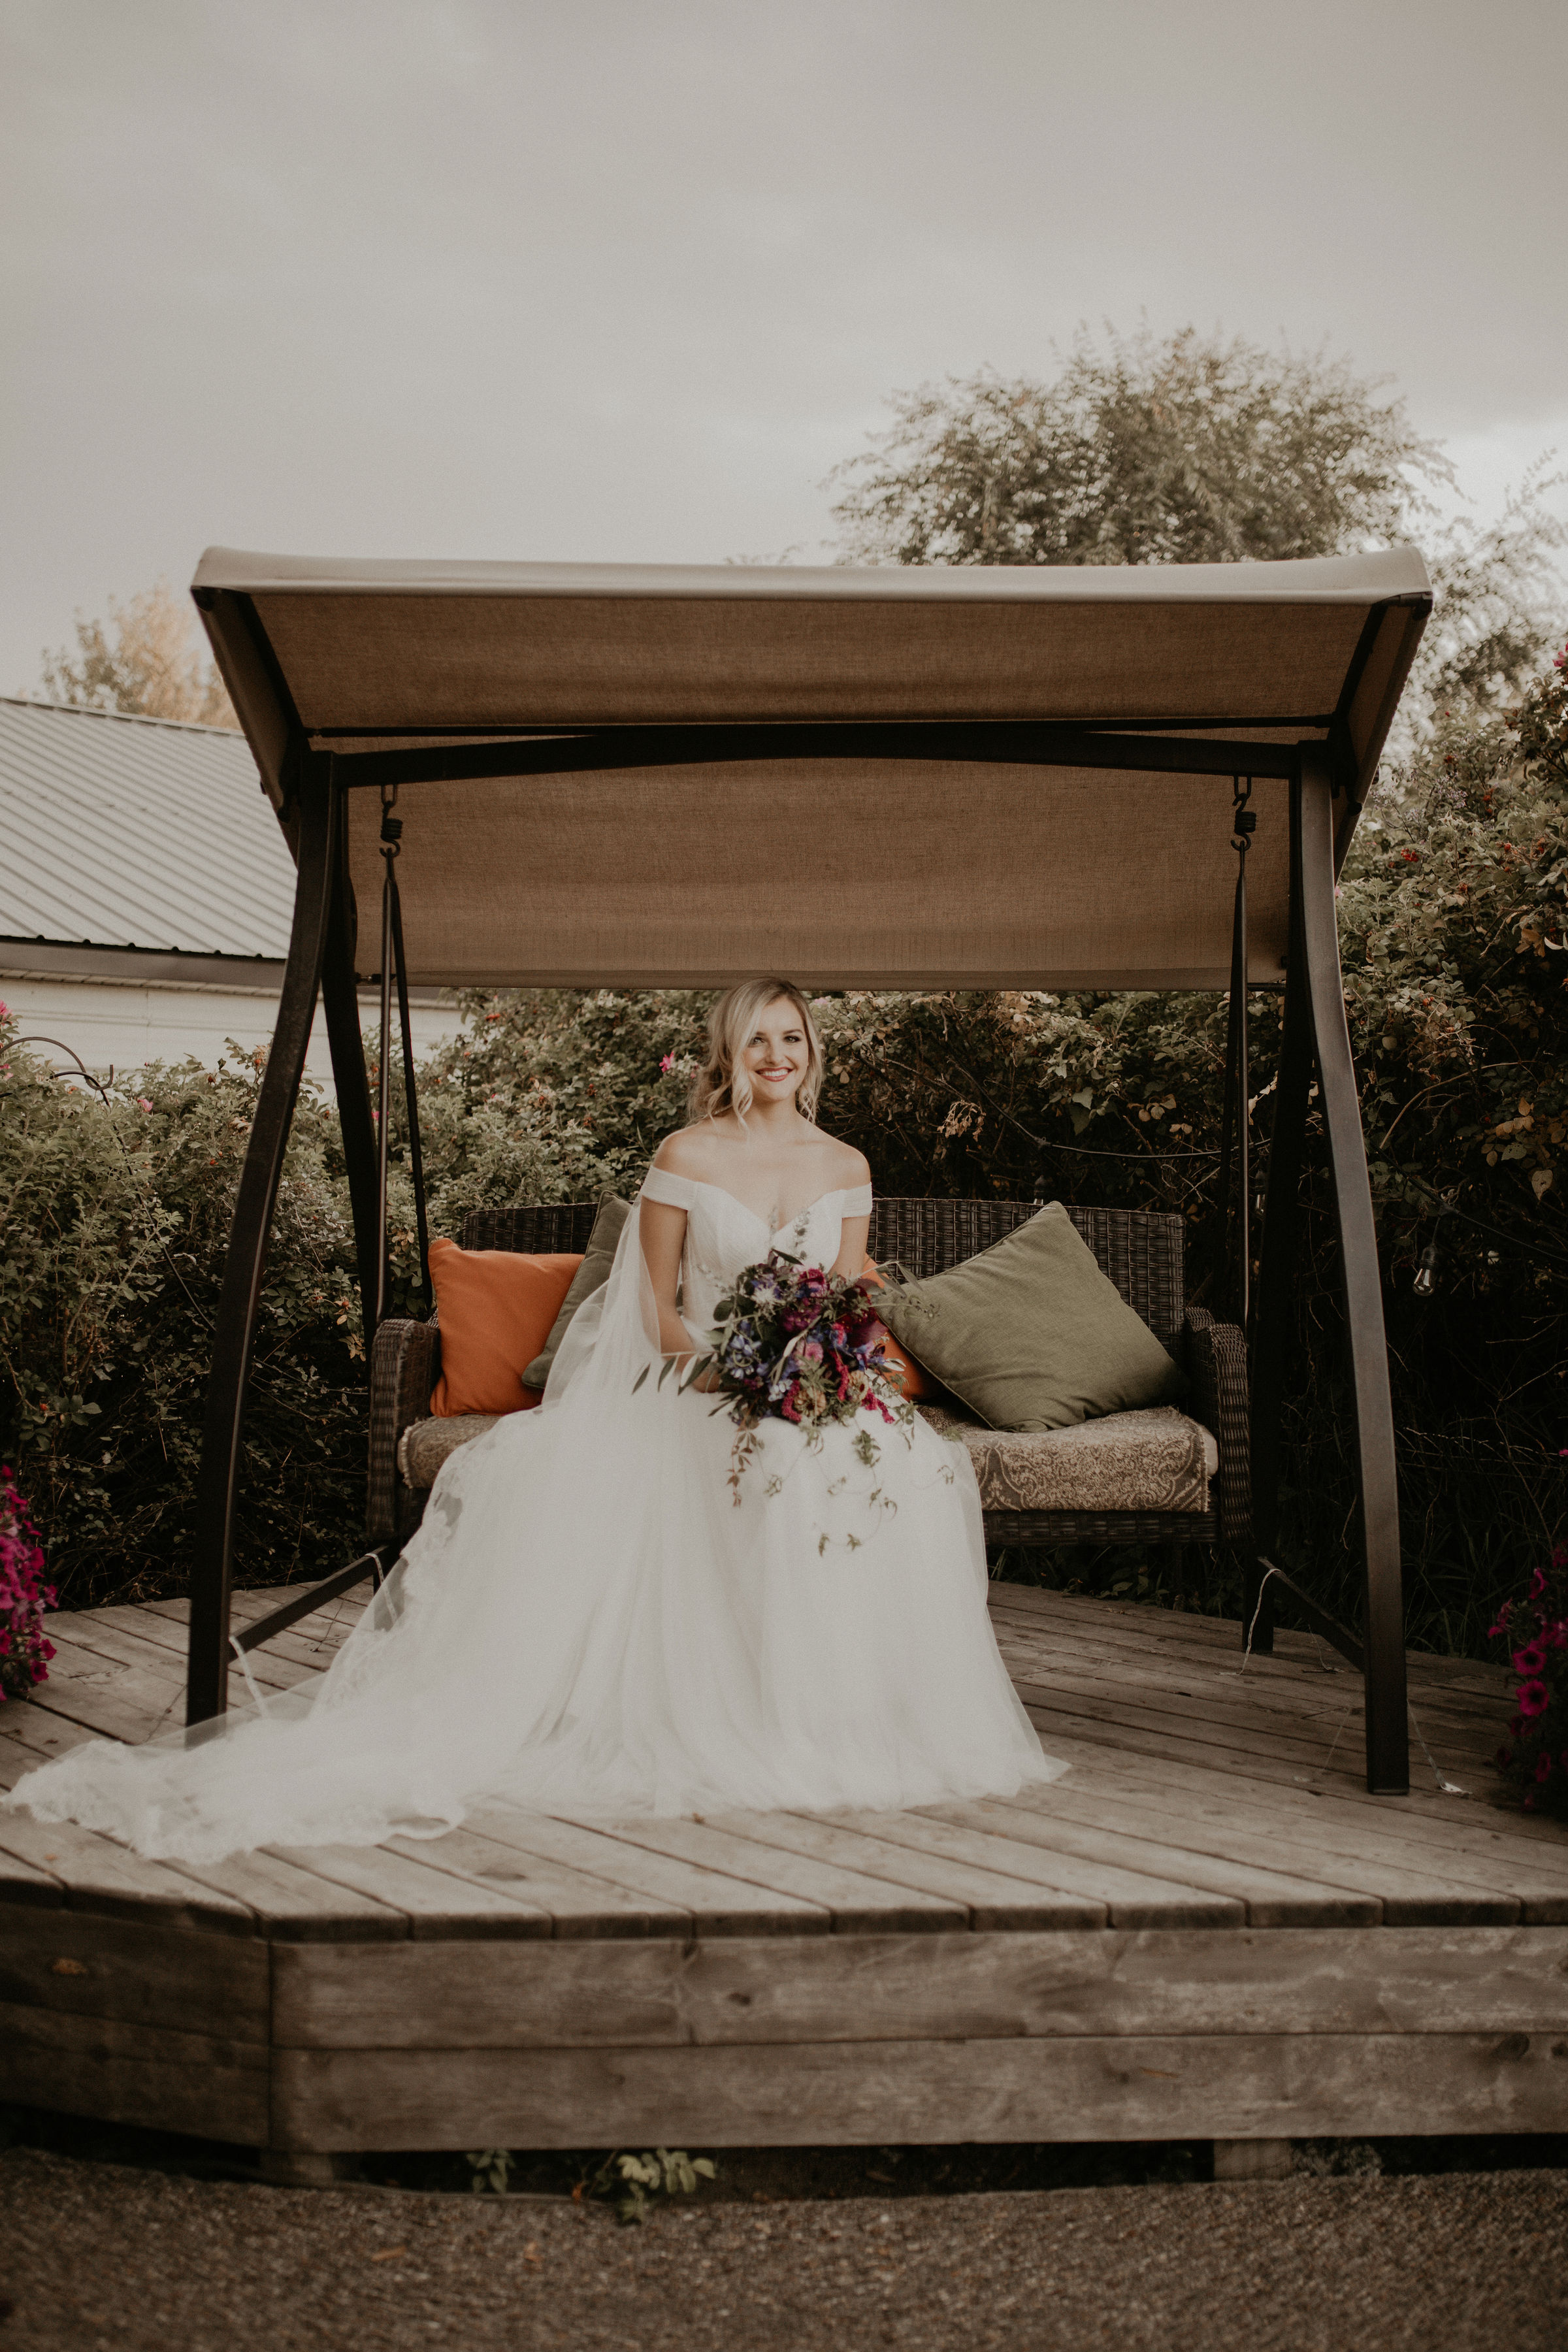 porch swing wedding spokane bride